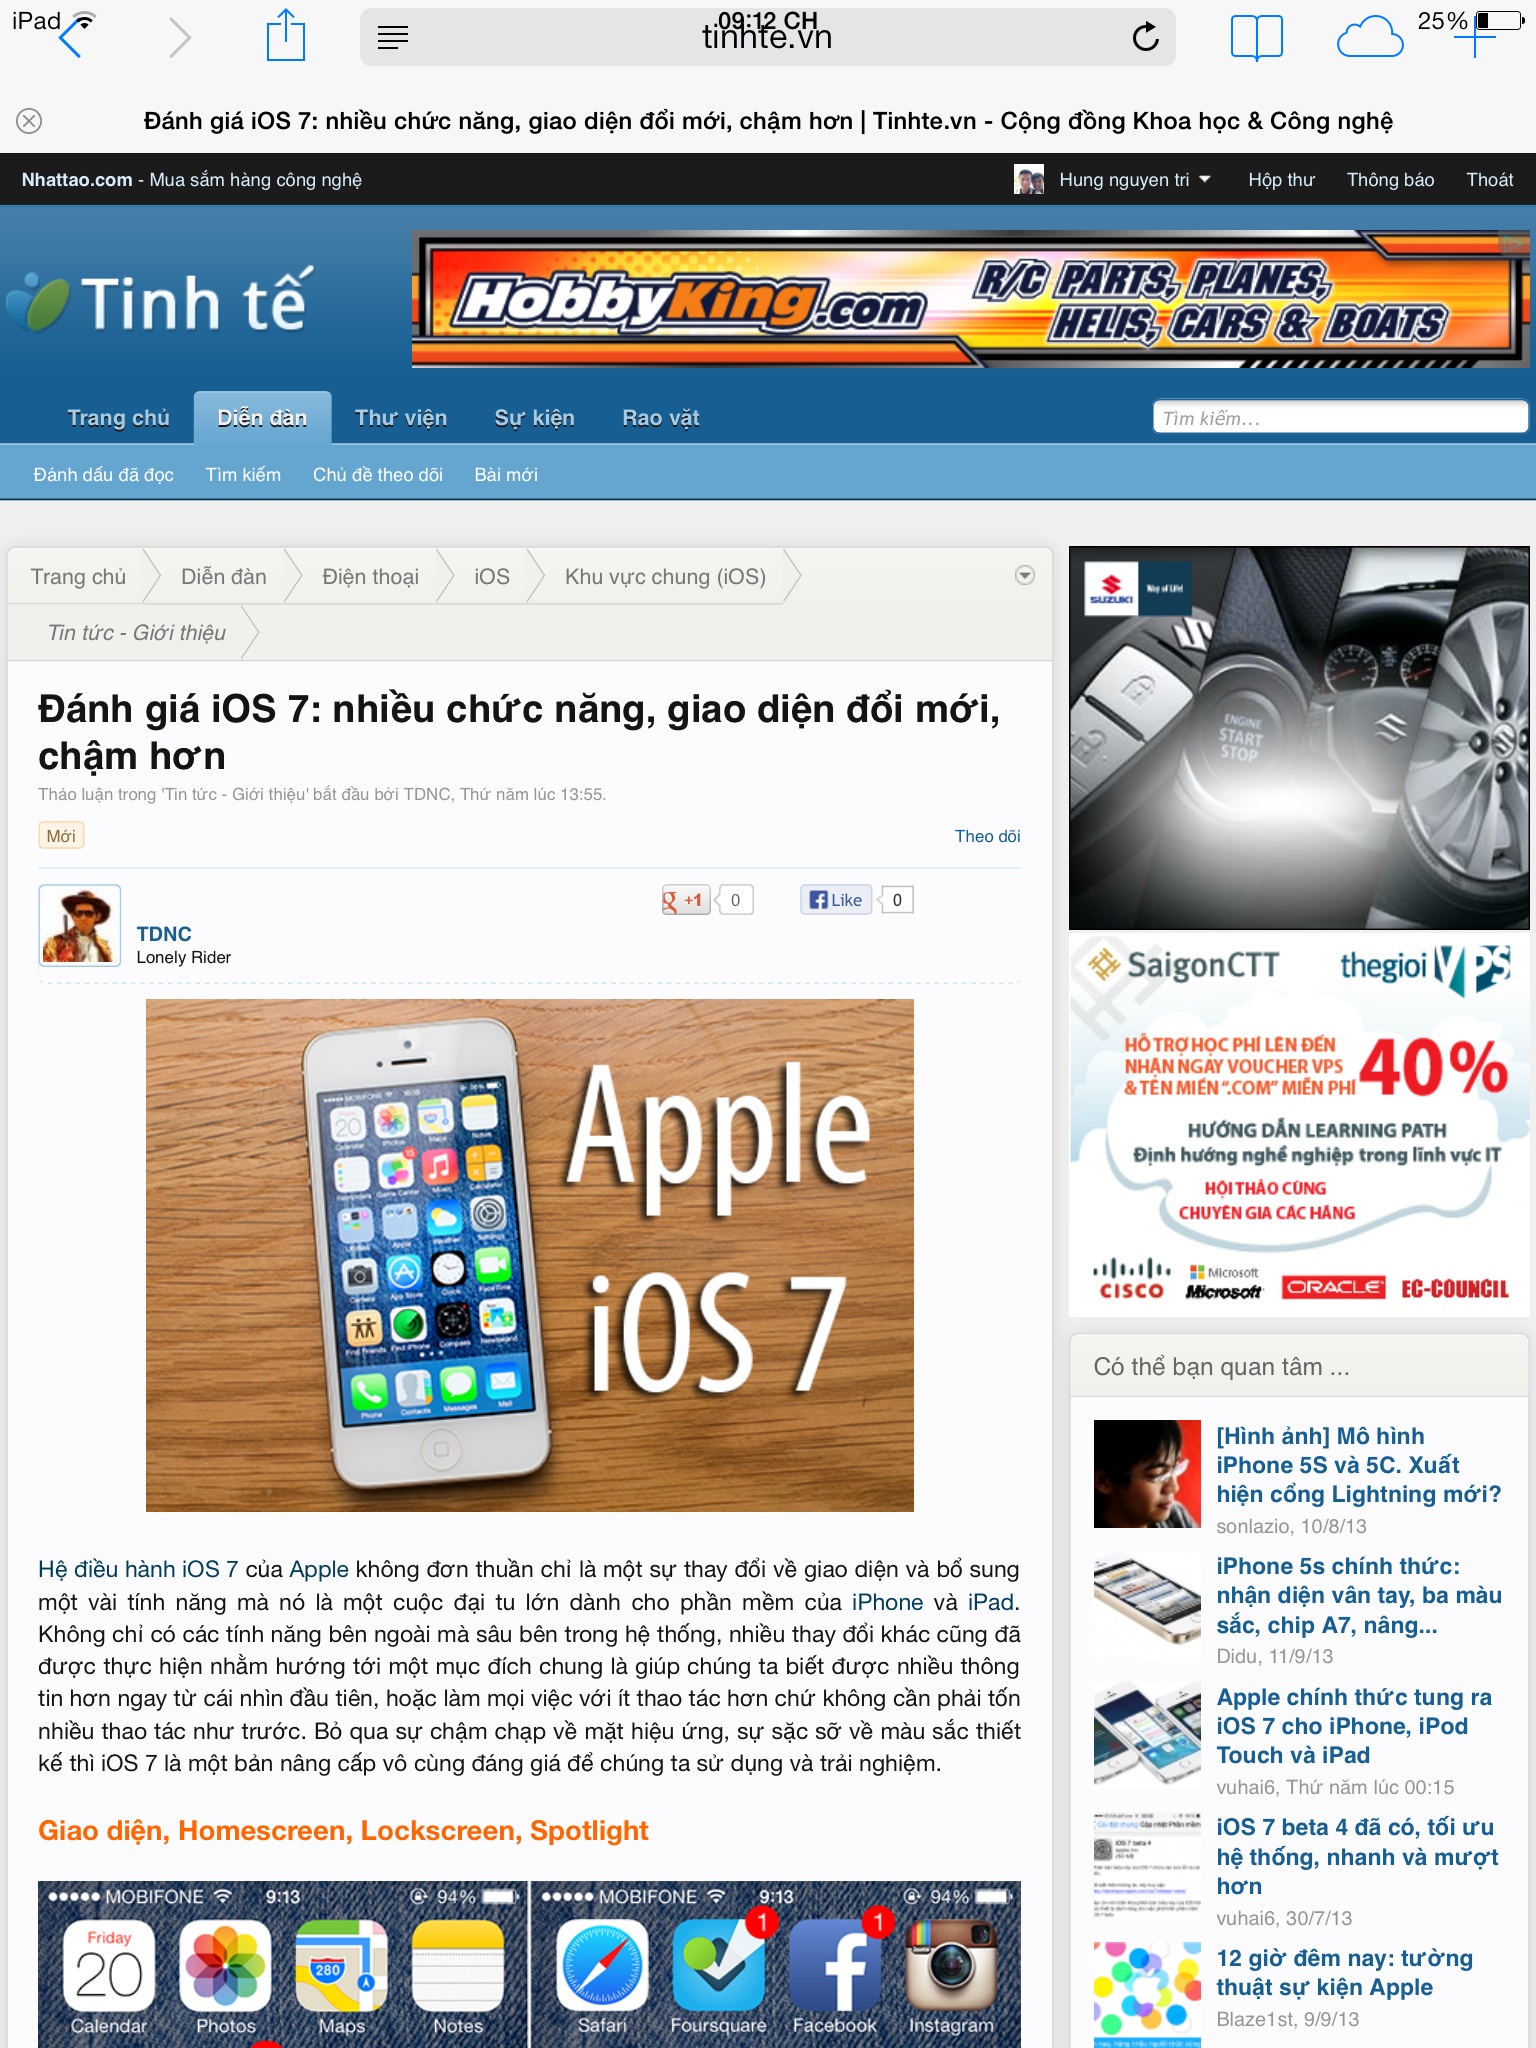 Cận cảnh các tính năng mới của iOS 7 qua ảnh | Báo Dân trí